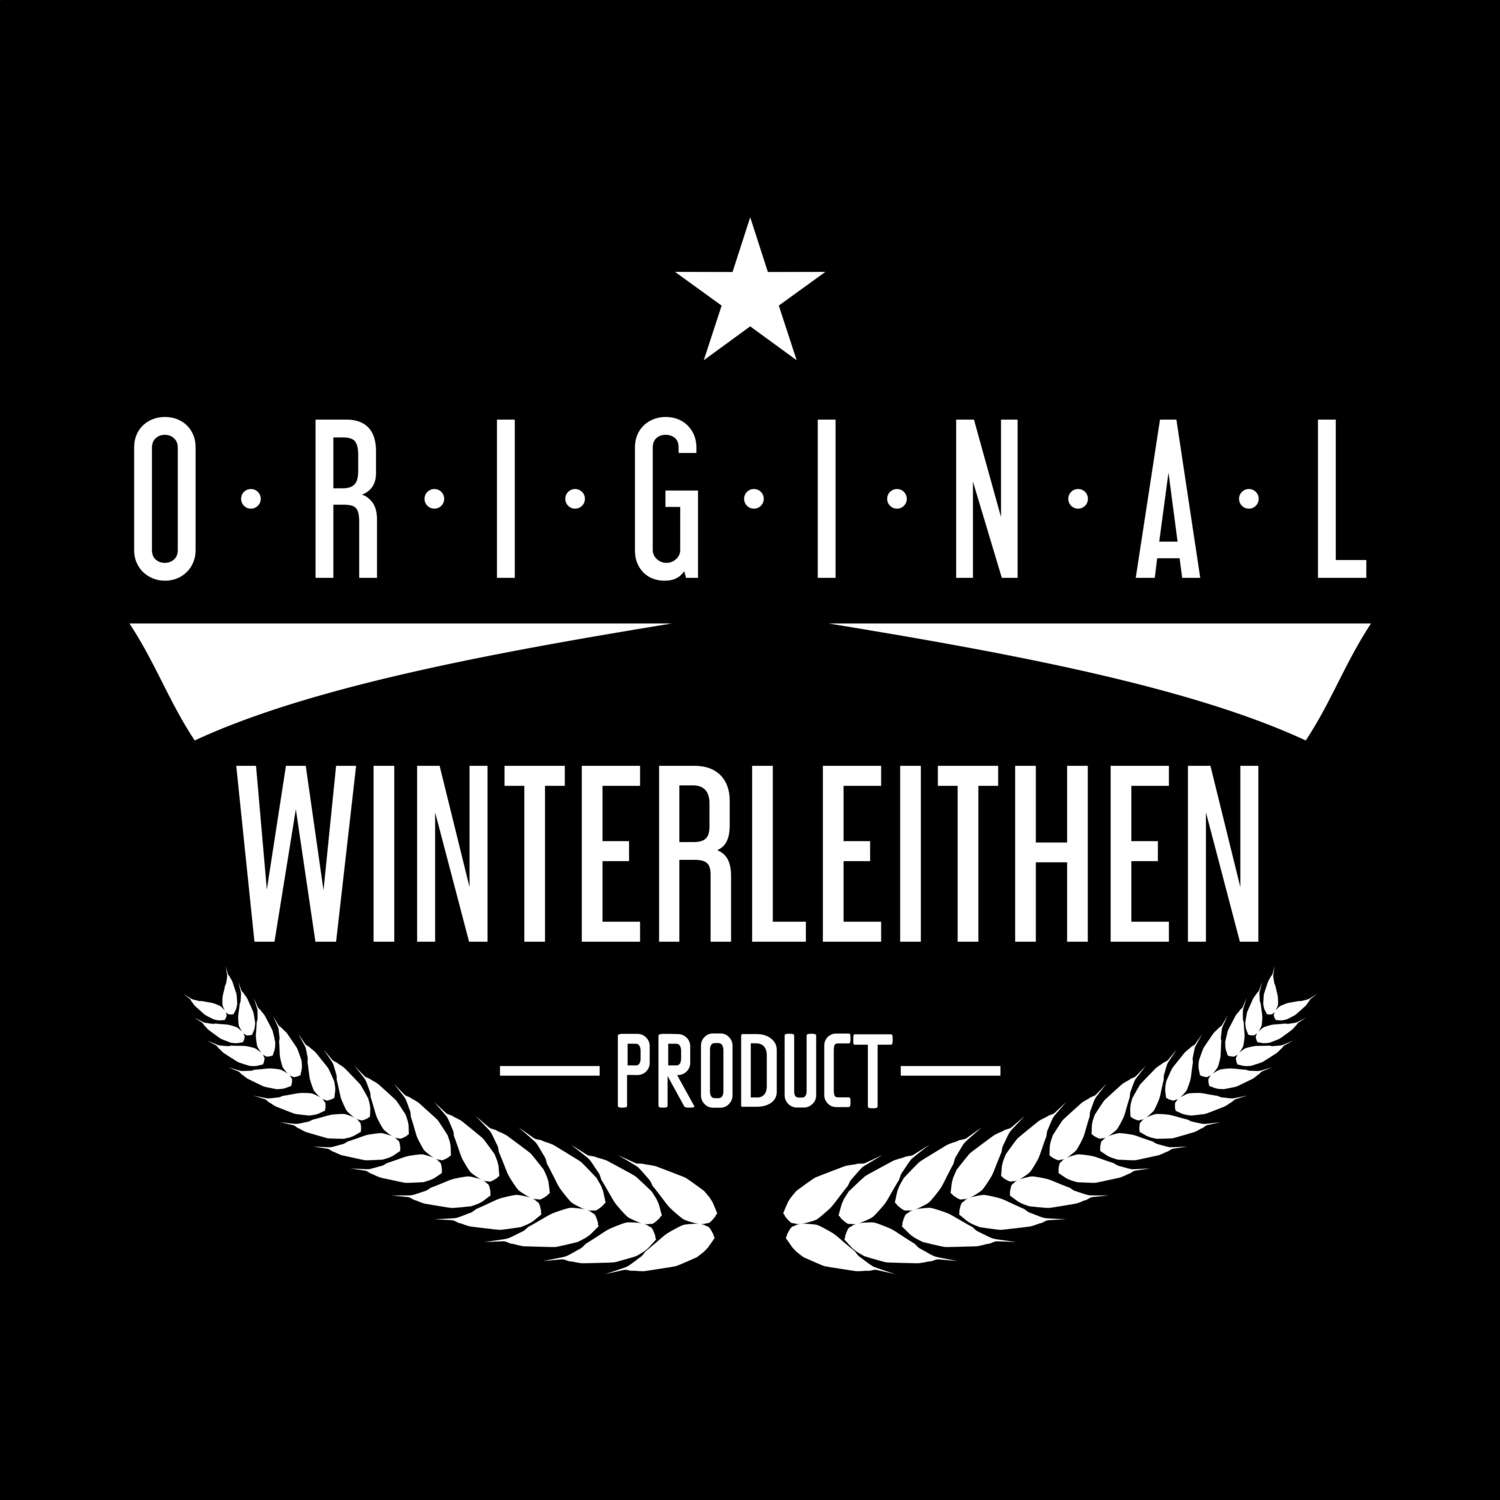 Winterleithen T-Shirt »Original Product«